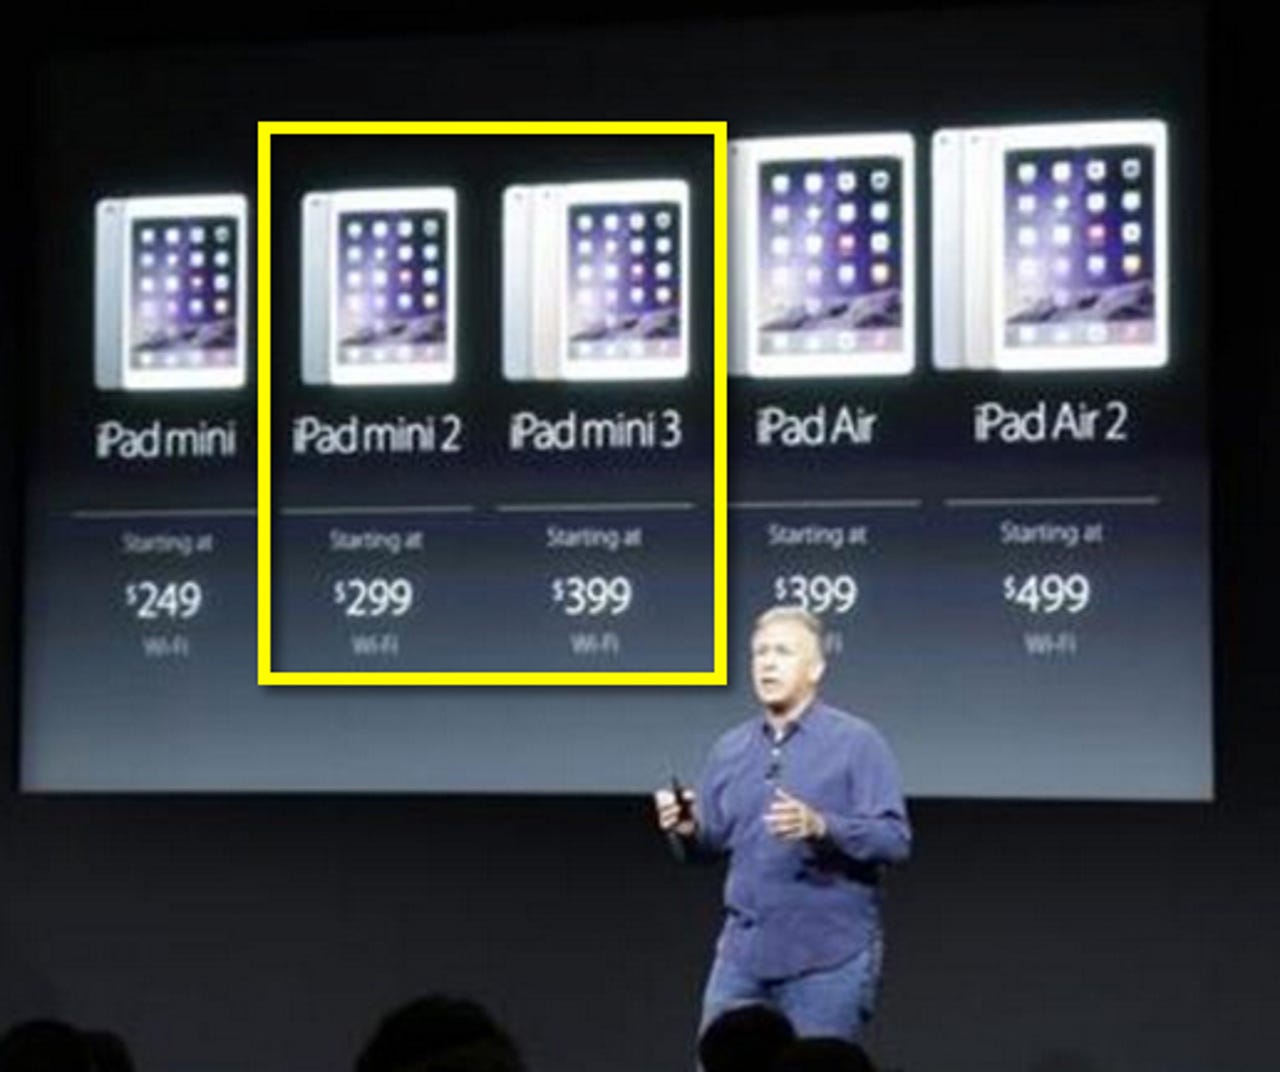 iPad mini pricing